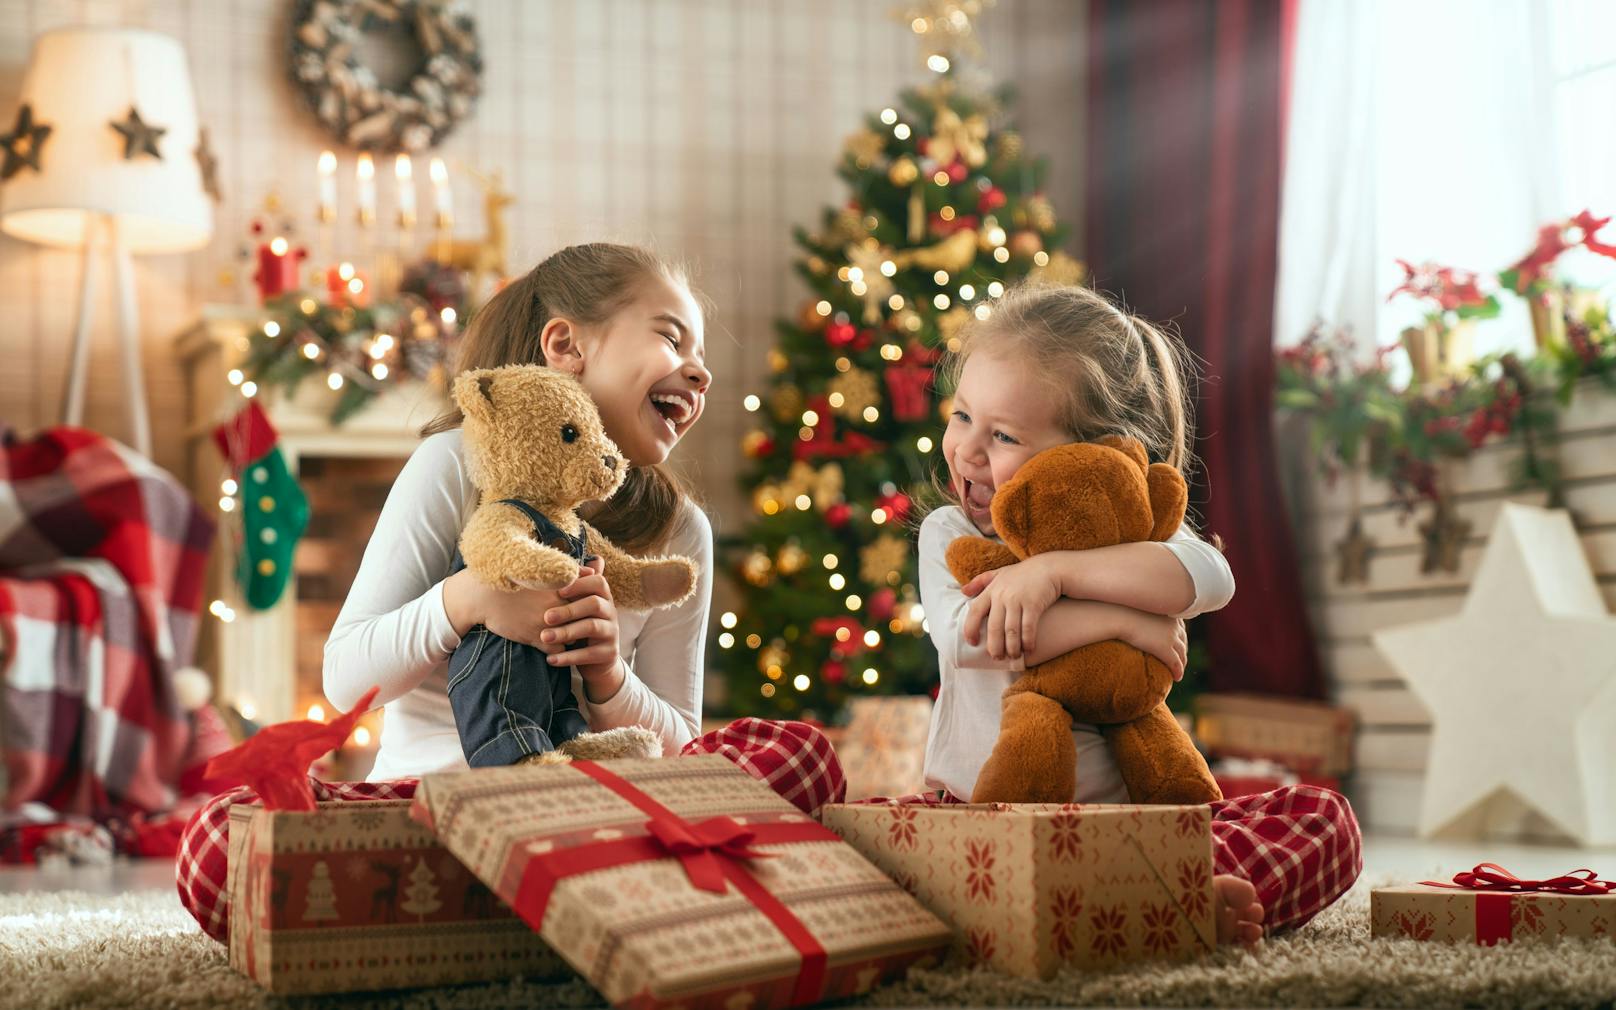 Weihnachtsgeschenke können ein großes Sicherheitsrisiko bergen und so die Freude unter dem Christbaum schnell zunichtemachen.